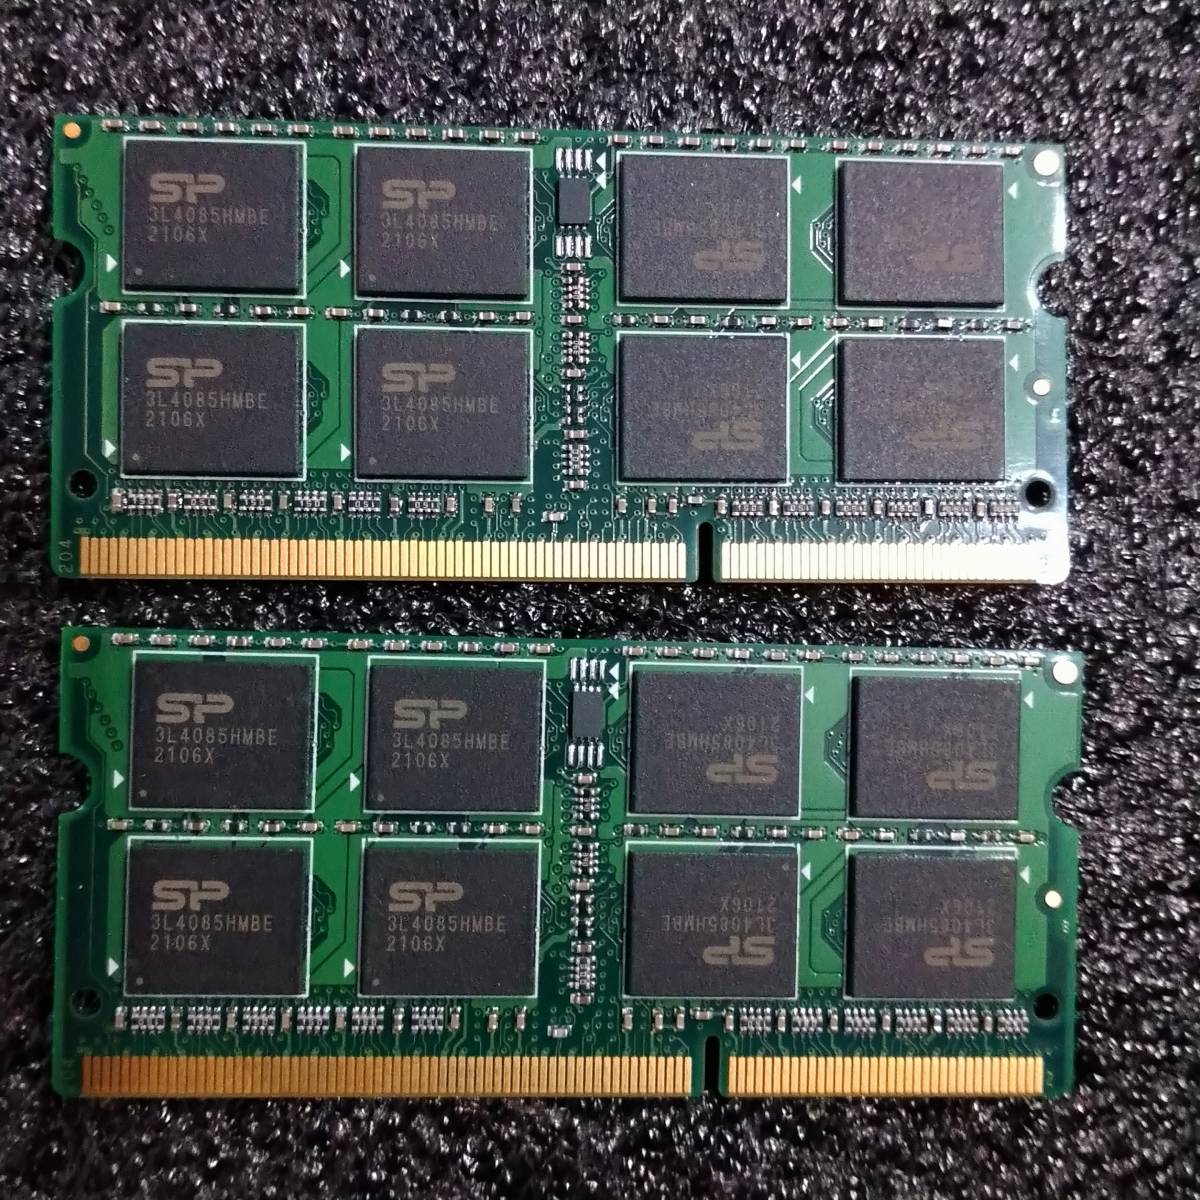 【中古】DDR3 SO-DIMM 16GB(8GB2枚組) シリコンパワー SP008GBSTU160N02 [DDR3-1600 PC3-12800 1.5V]_画像3